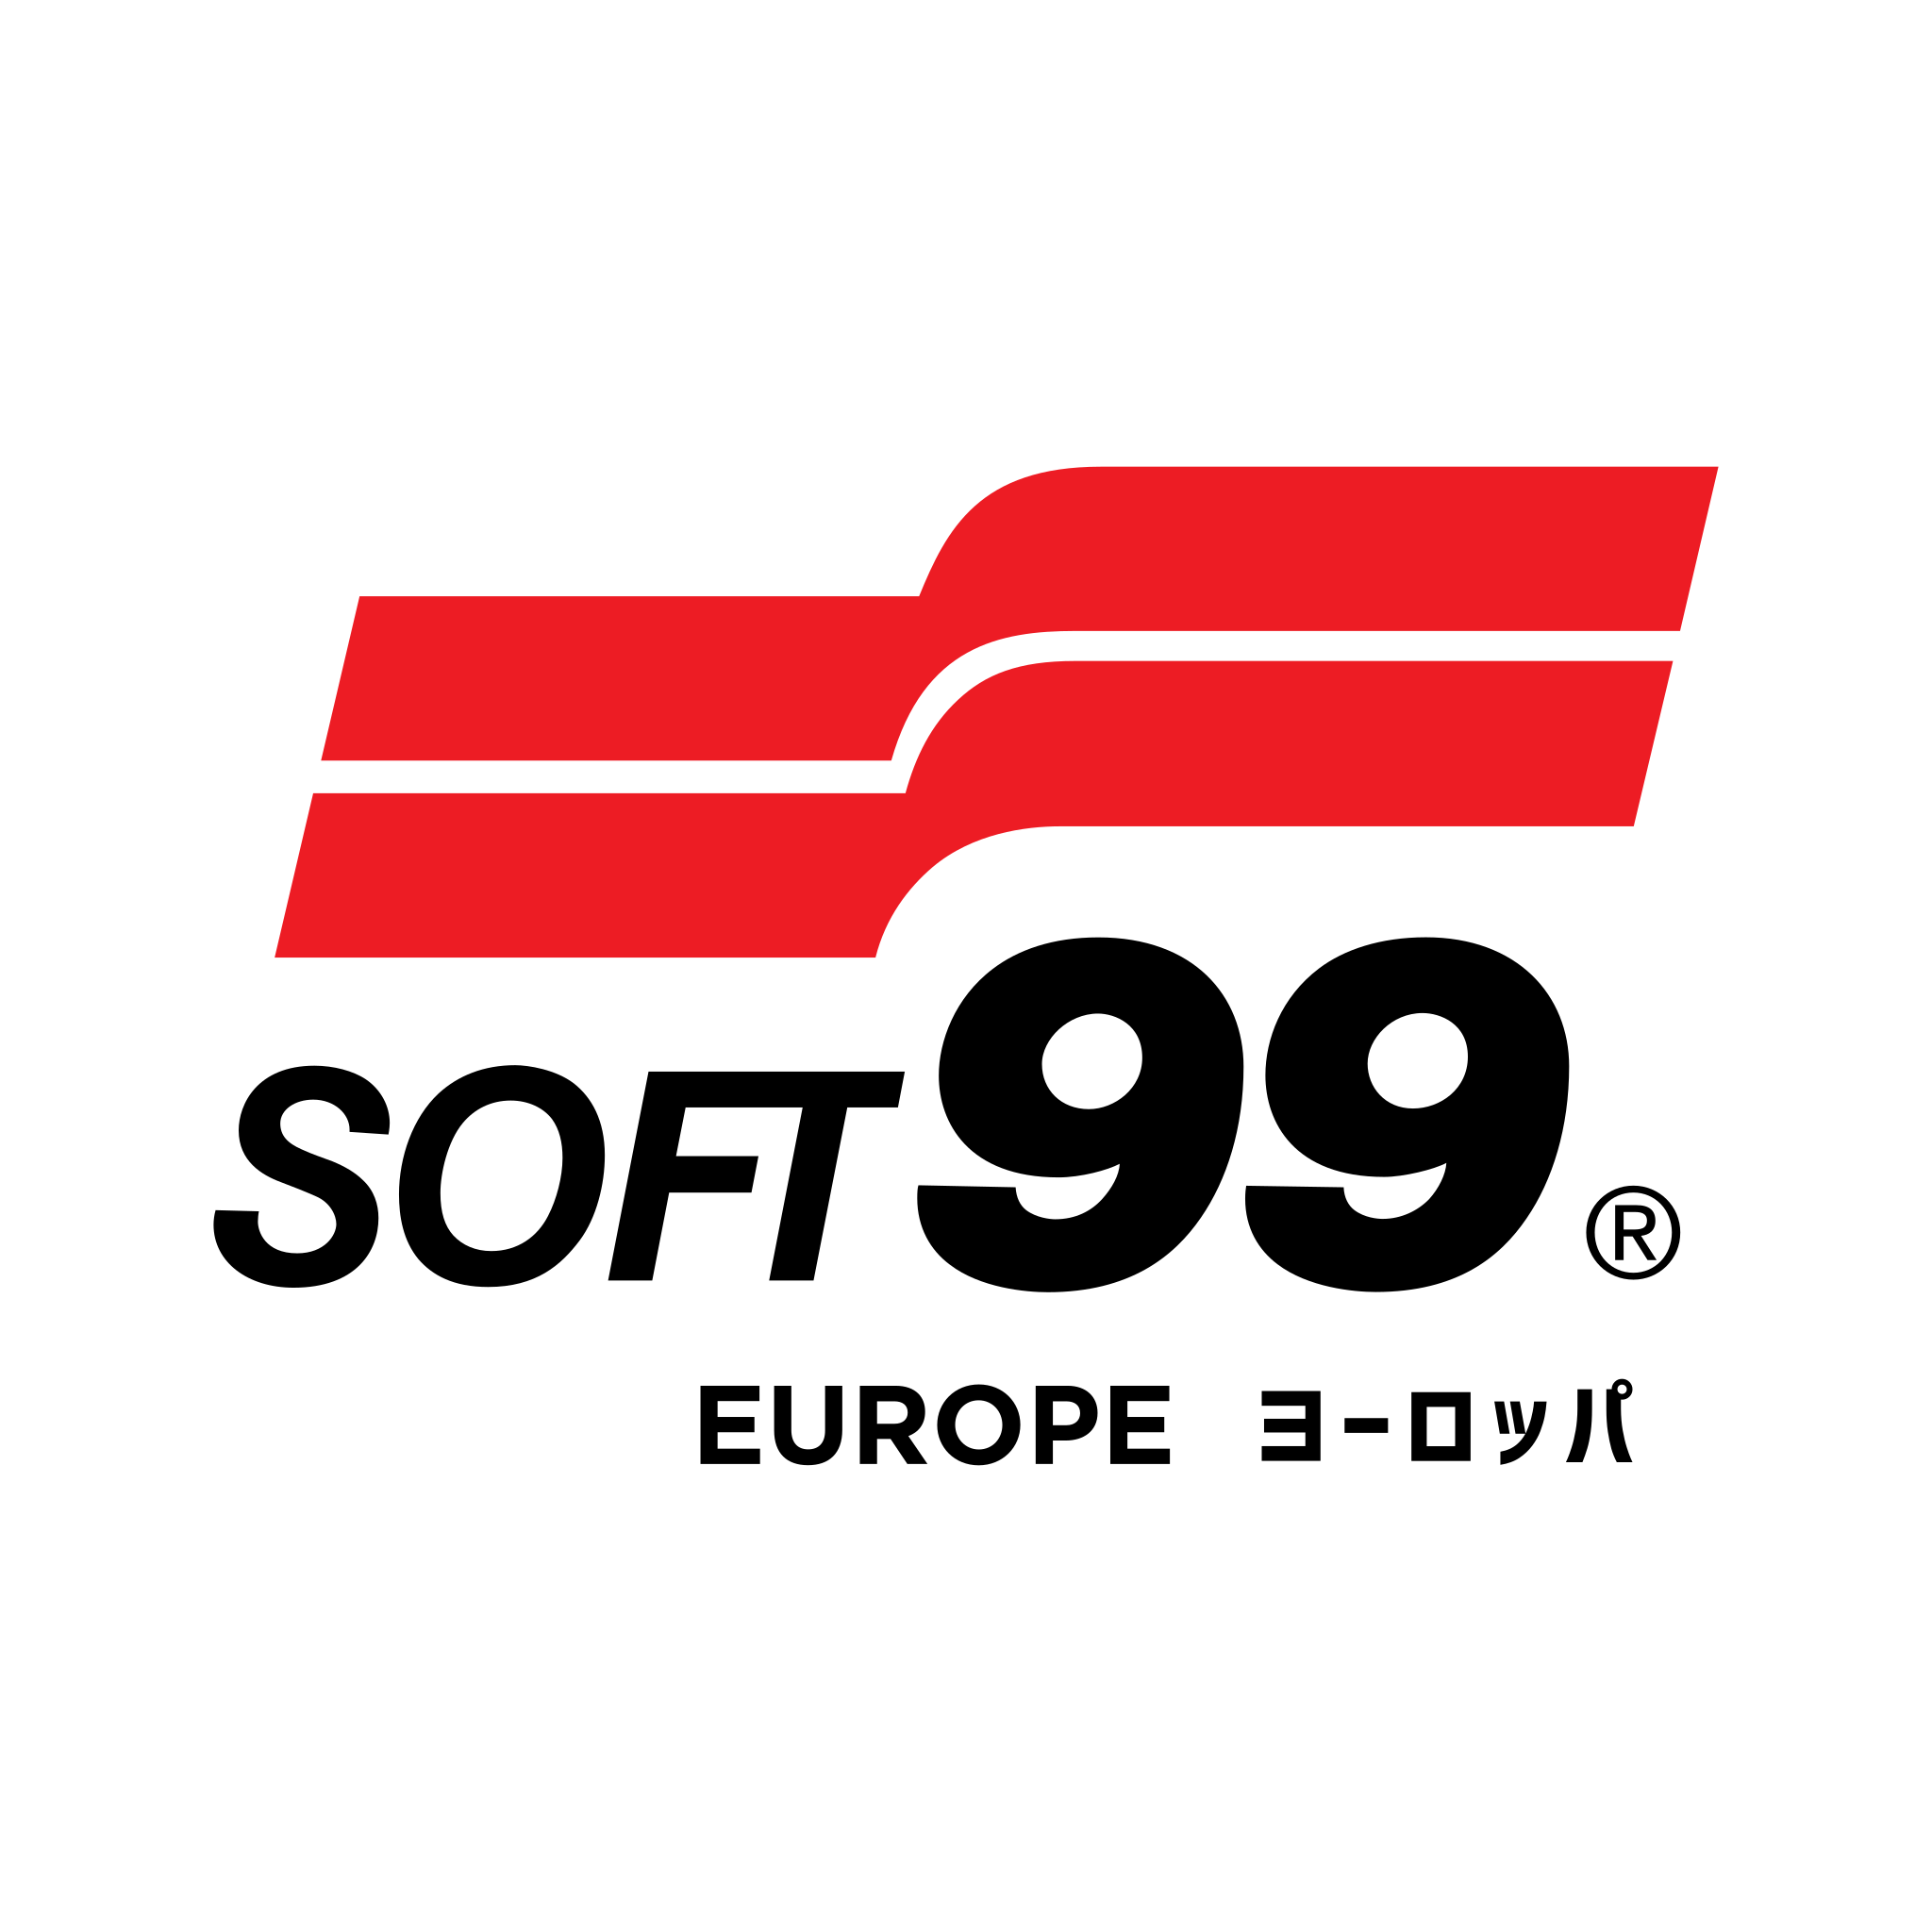 Soft99 Darmowa dostawa od 100 zł na Sklep.soft99.eu